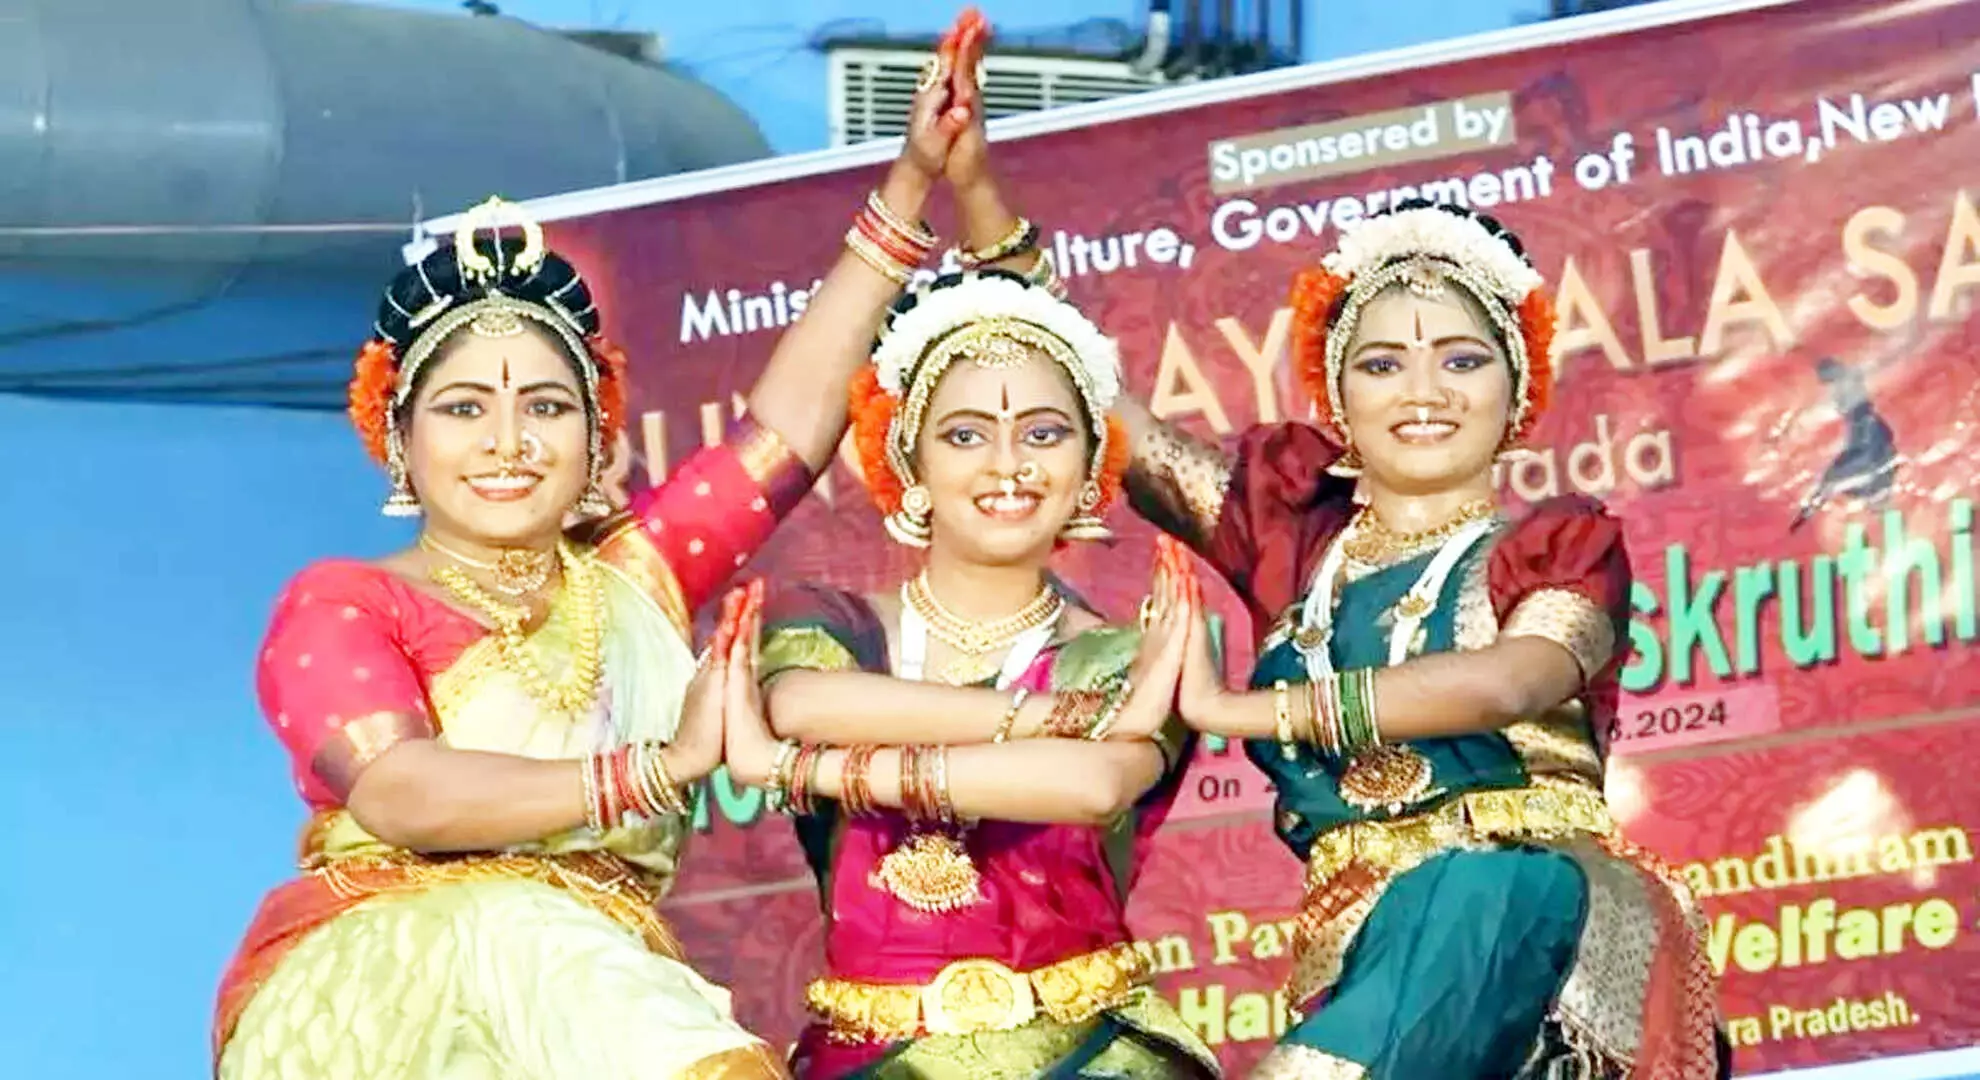 संस्कृतिका सिरुलु नृत्य महोत्सव विकलांगों को सशक्त बनाता है